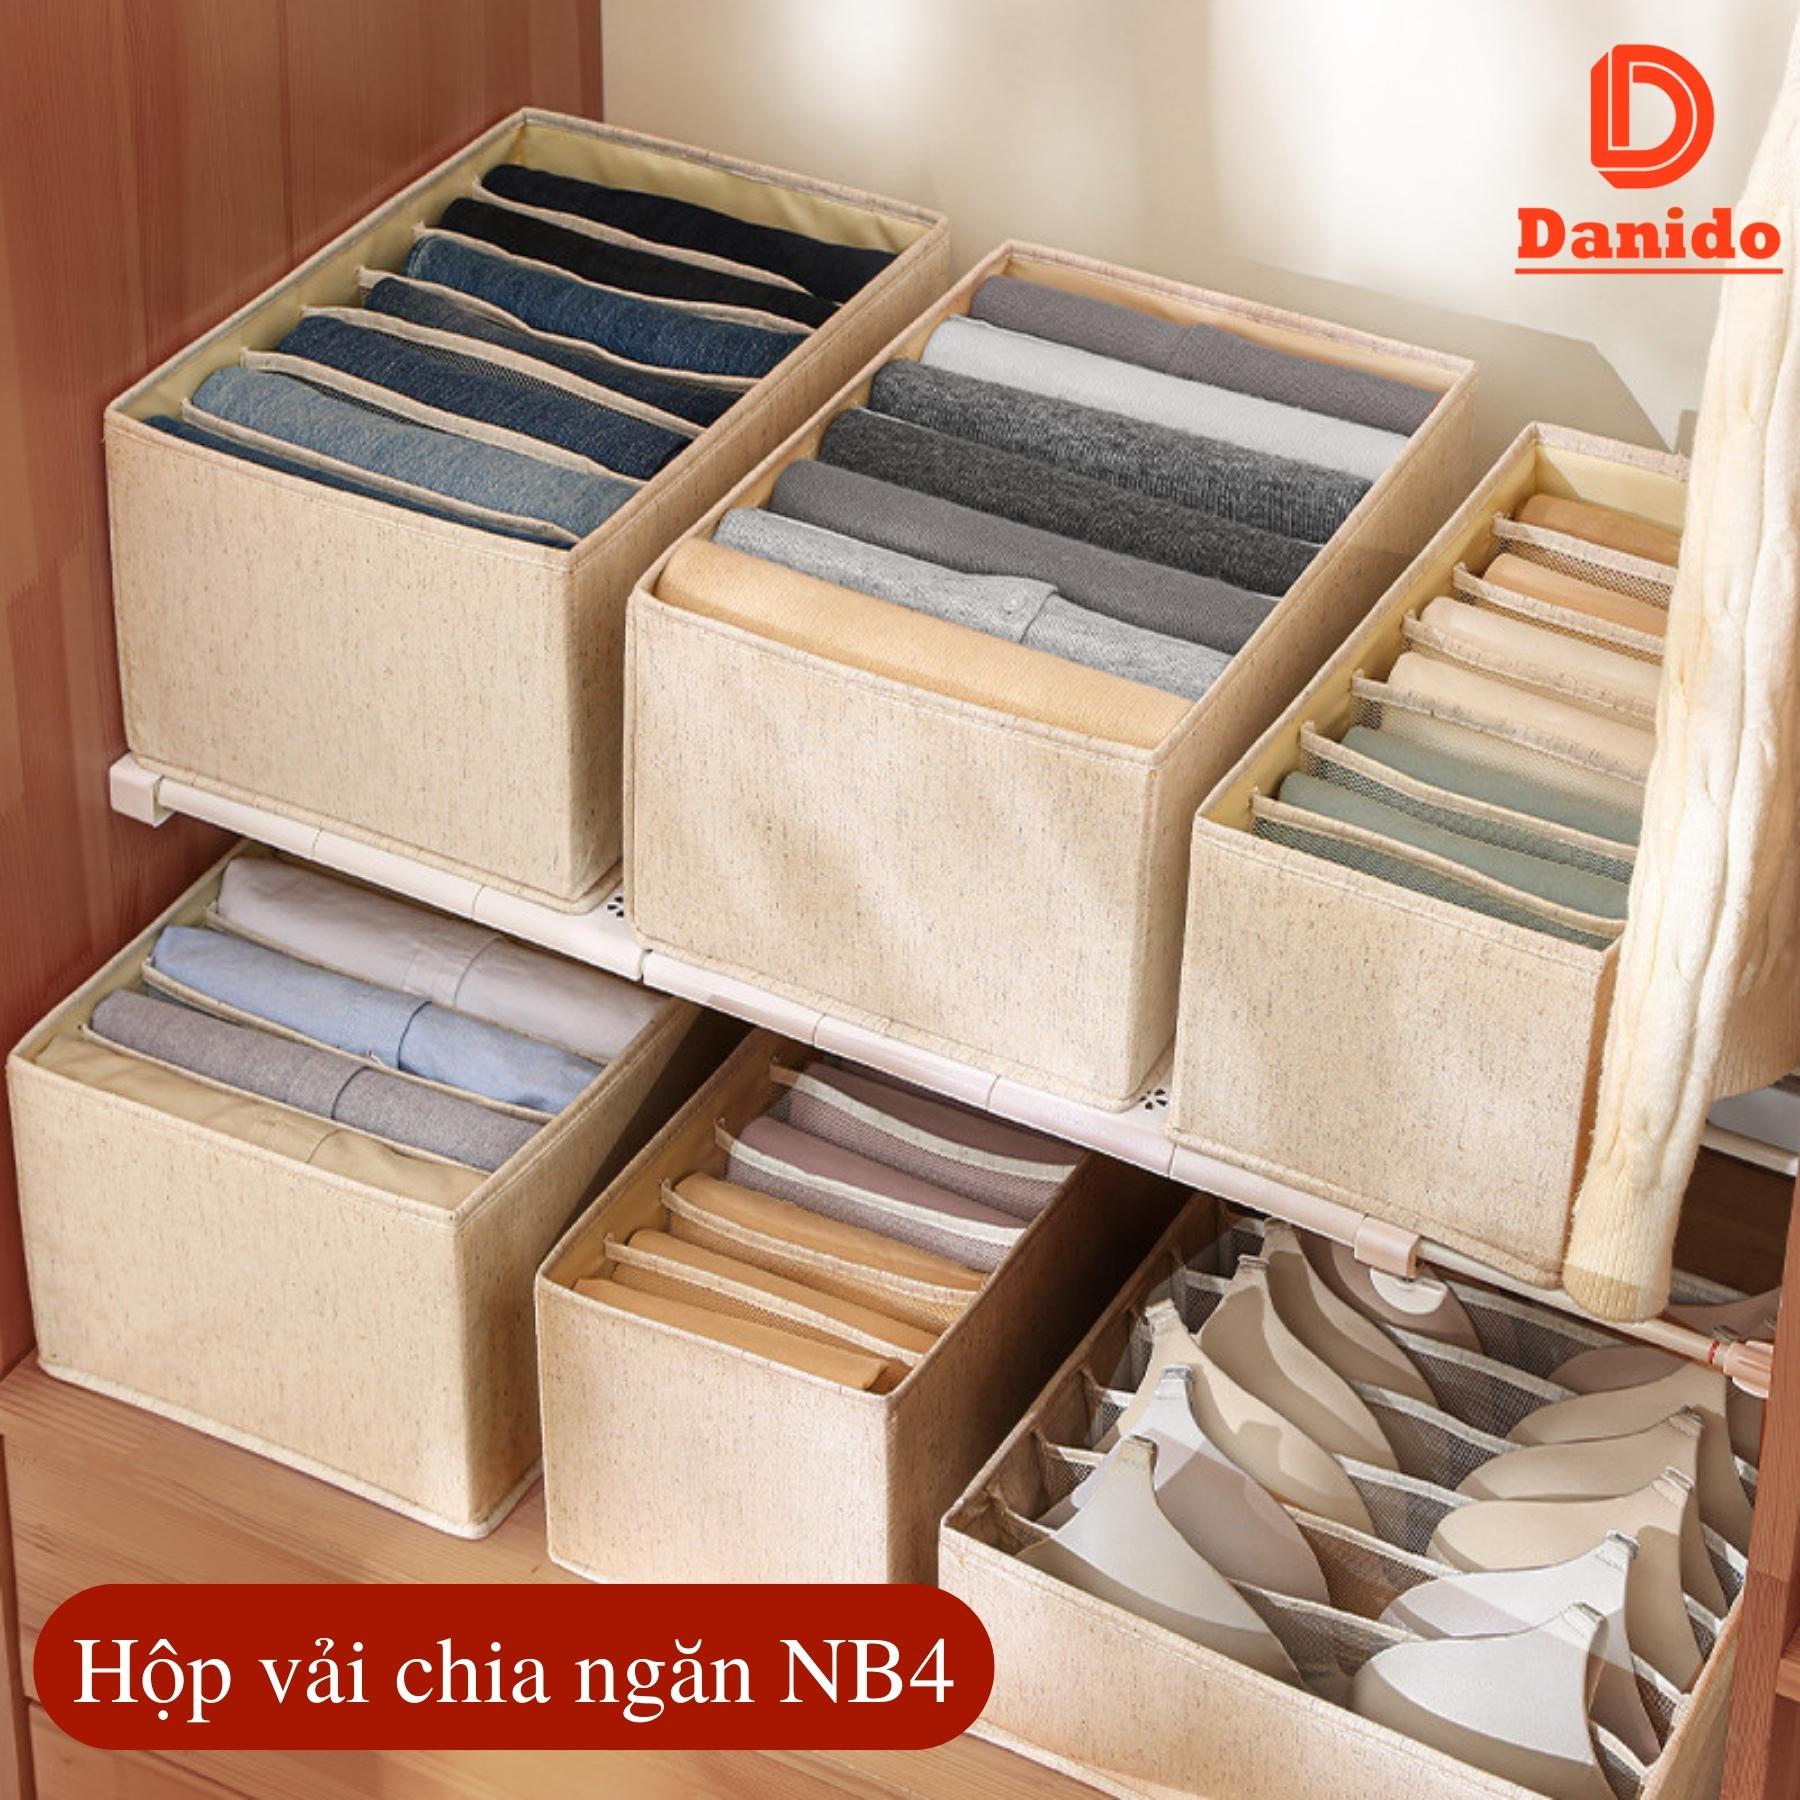 Hộp vải đựng đồ chia ngăn NB4 - Hộp đựng quần áo chia ngăn gấp gọn chính hãng D Danido